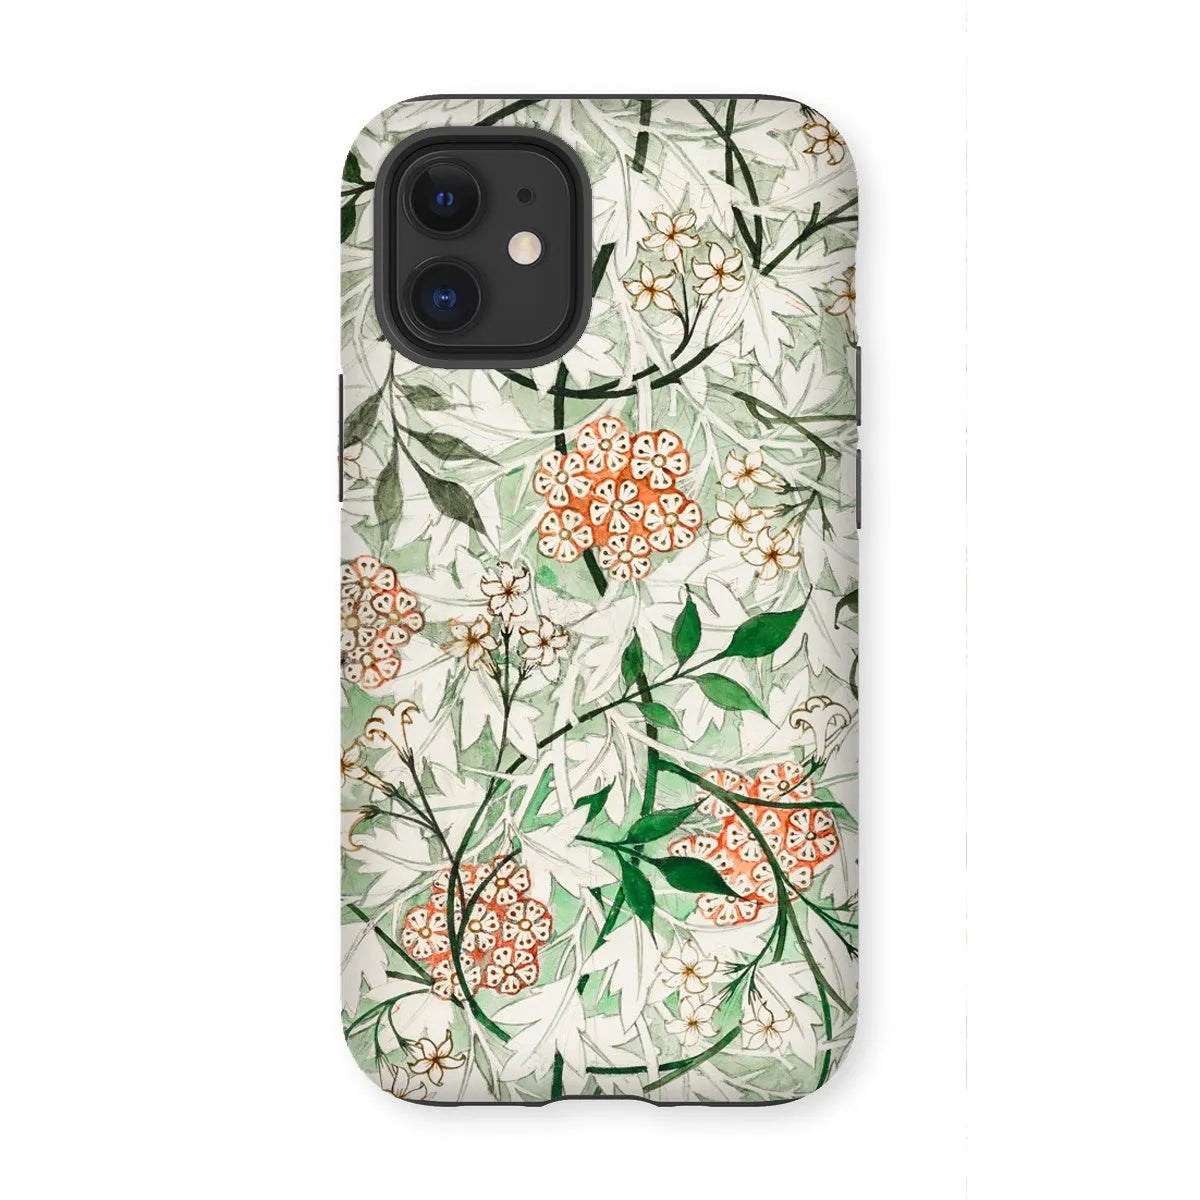 Jasmine Floral Aesthetic Art Phone Case - William Morris - Iphone 12 Mini / Matte - Mobile Phone Cases - Aesthetic Art